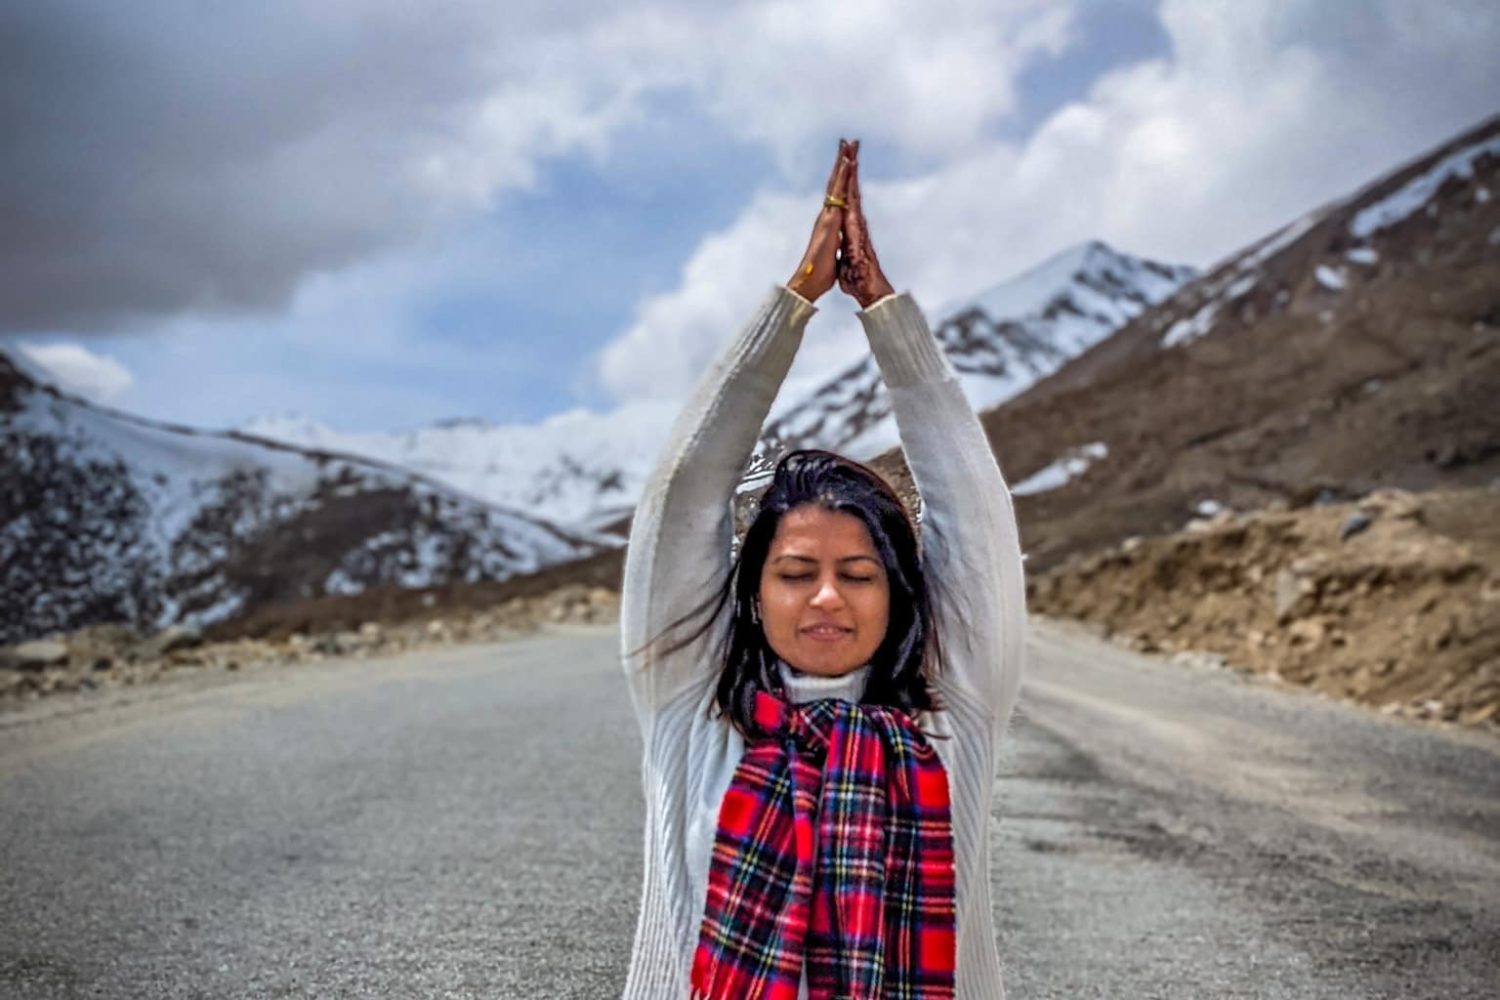 Yoga in Ladakh